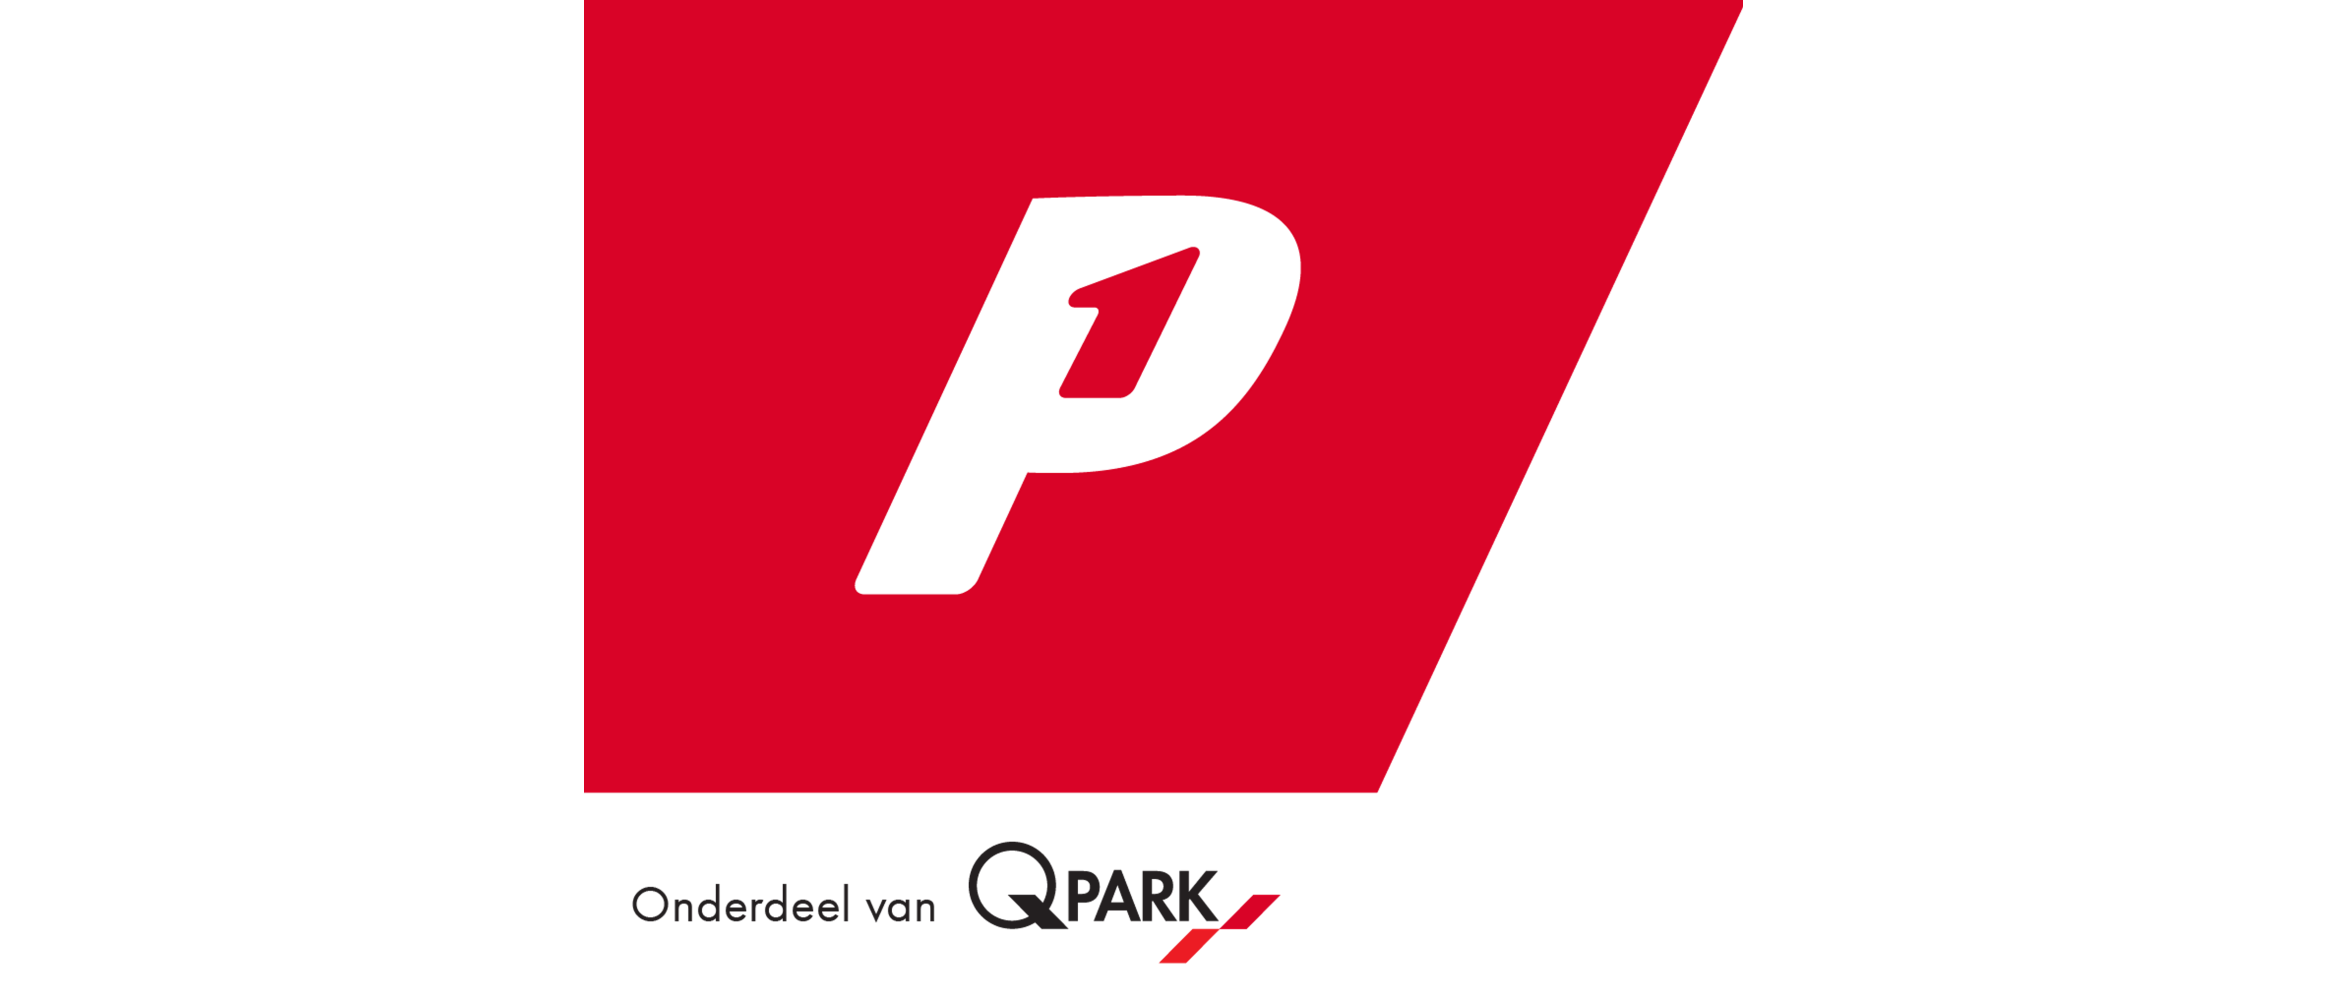 P1.nl